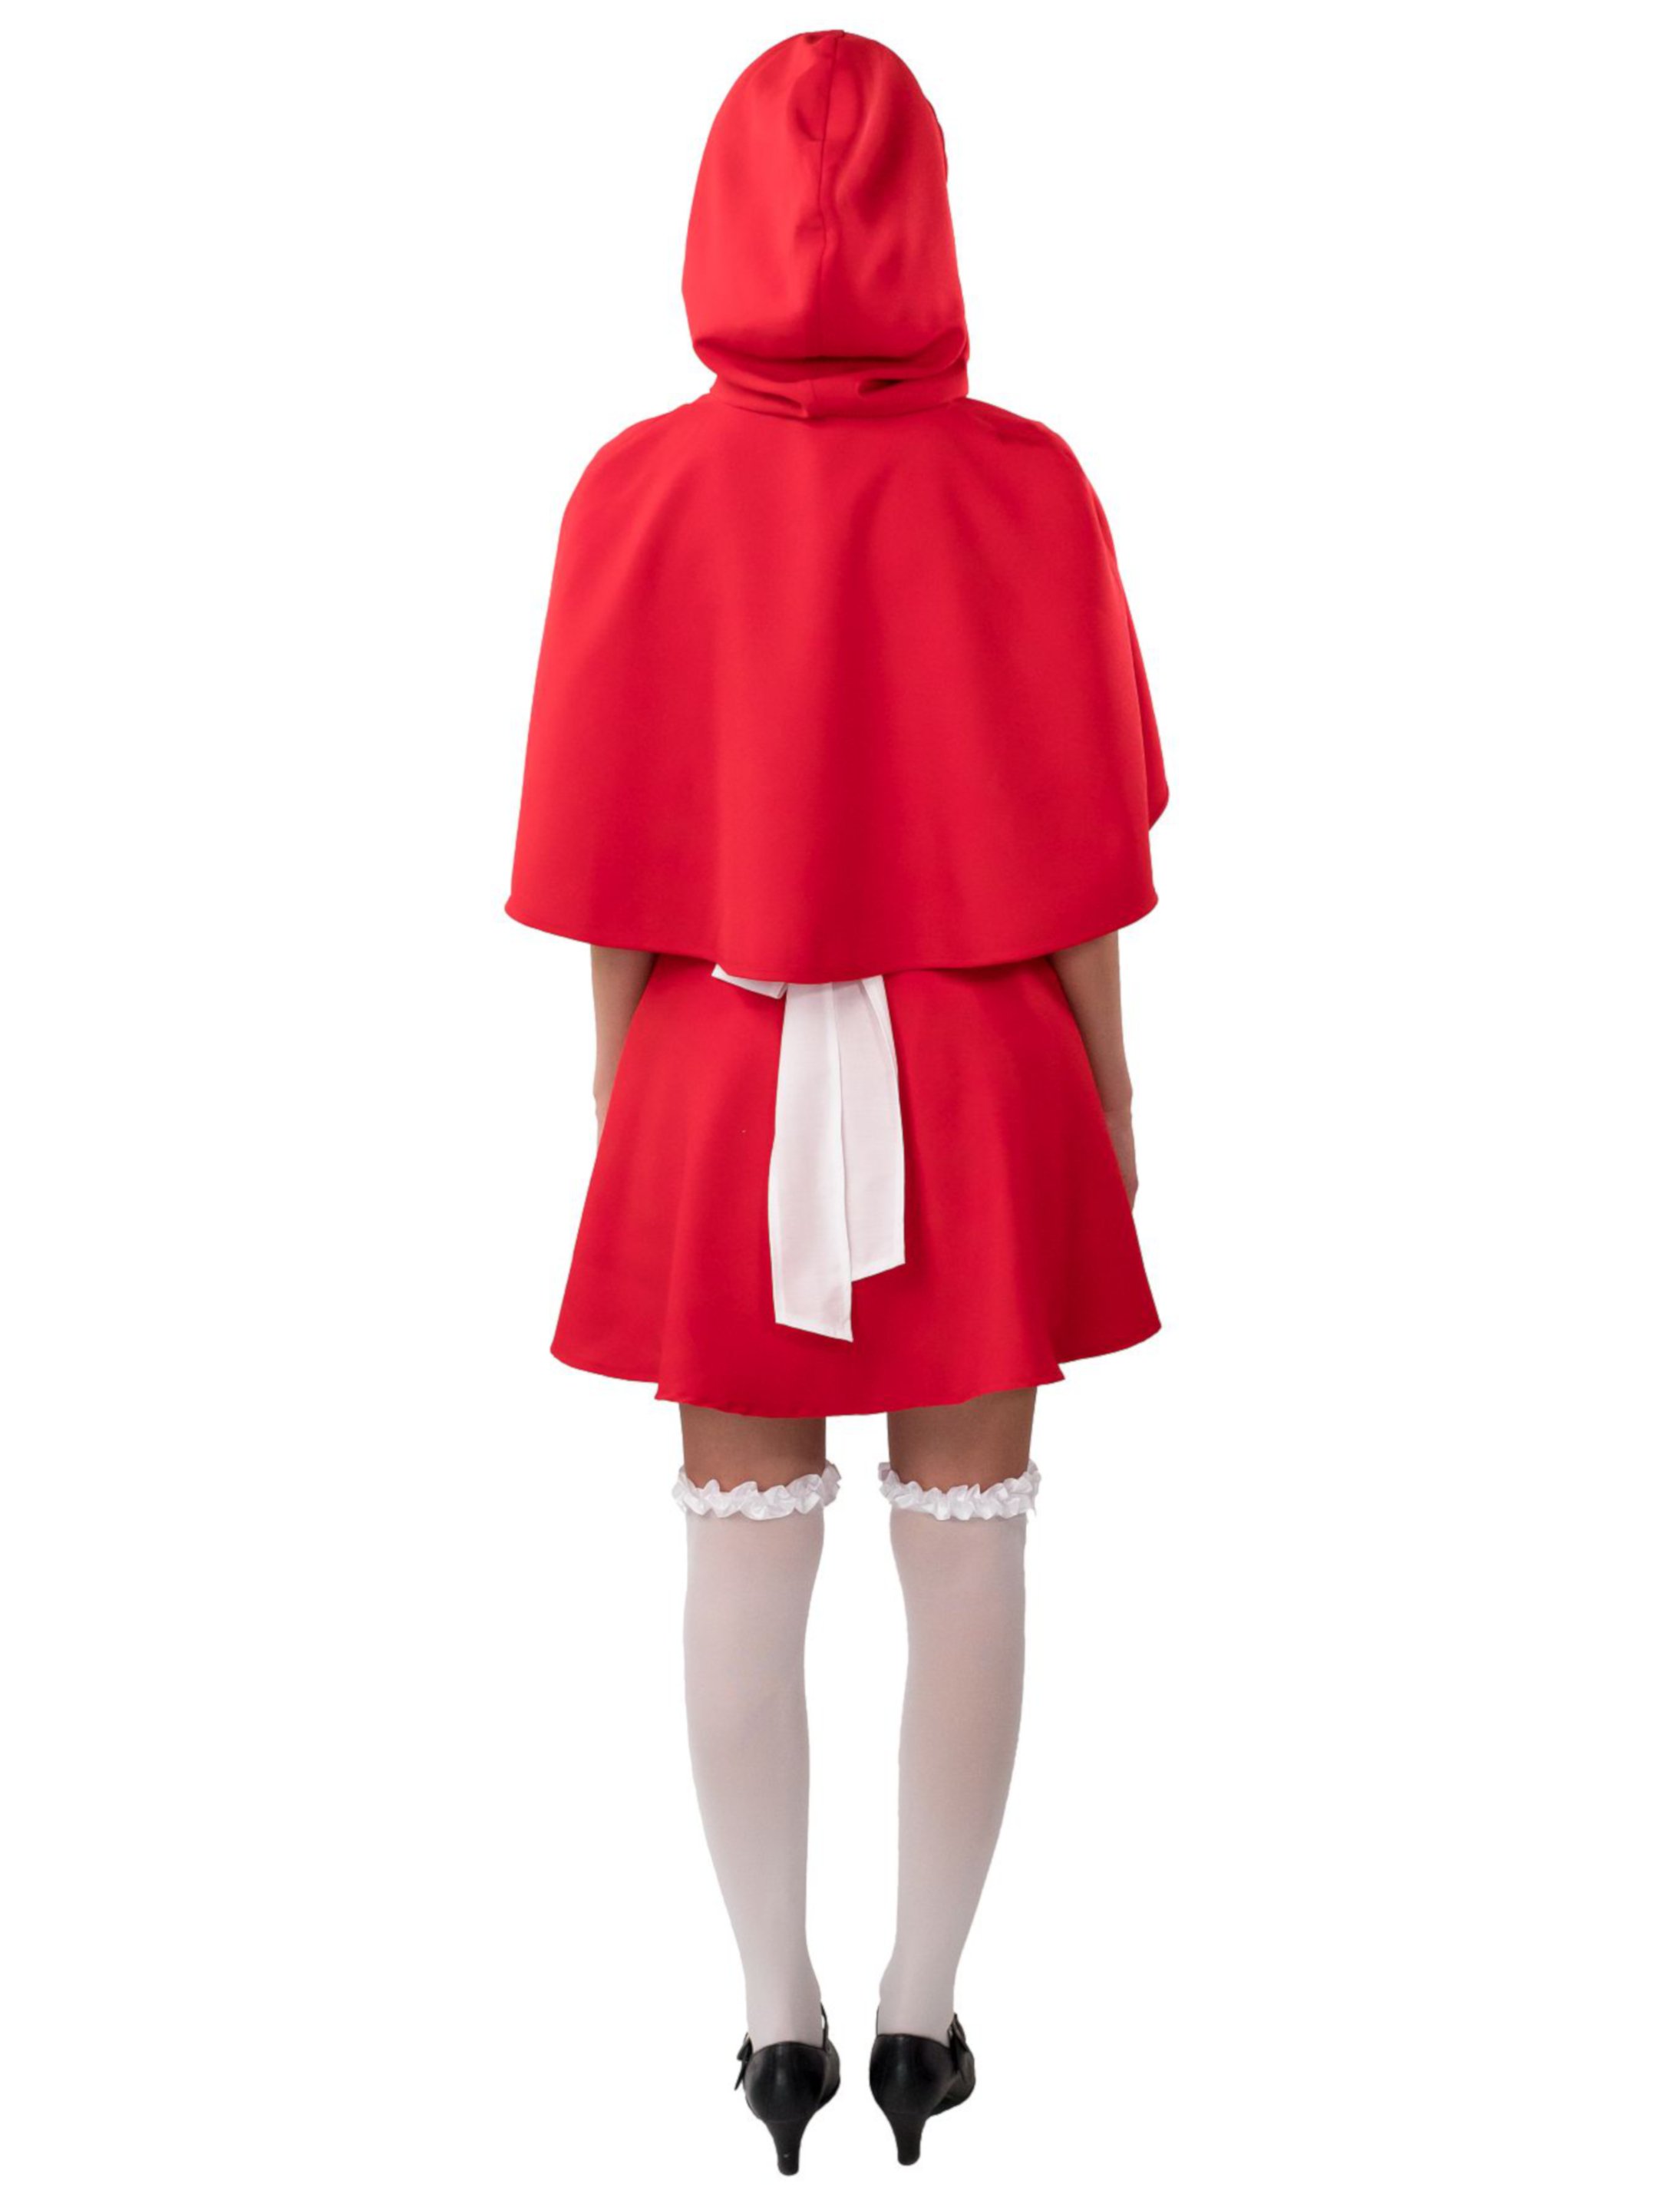 Kleid Rotkäppchen Kostüm 3-tlg. rot 42-44